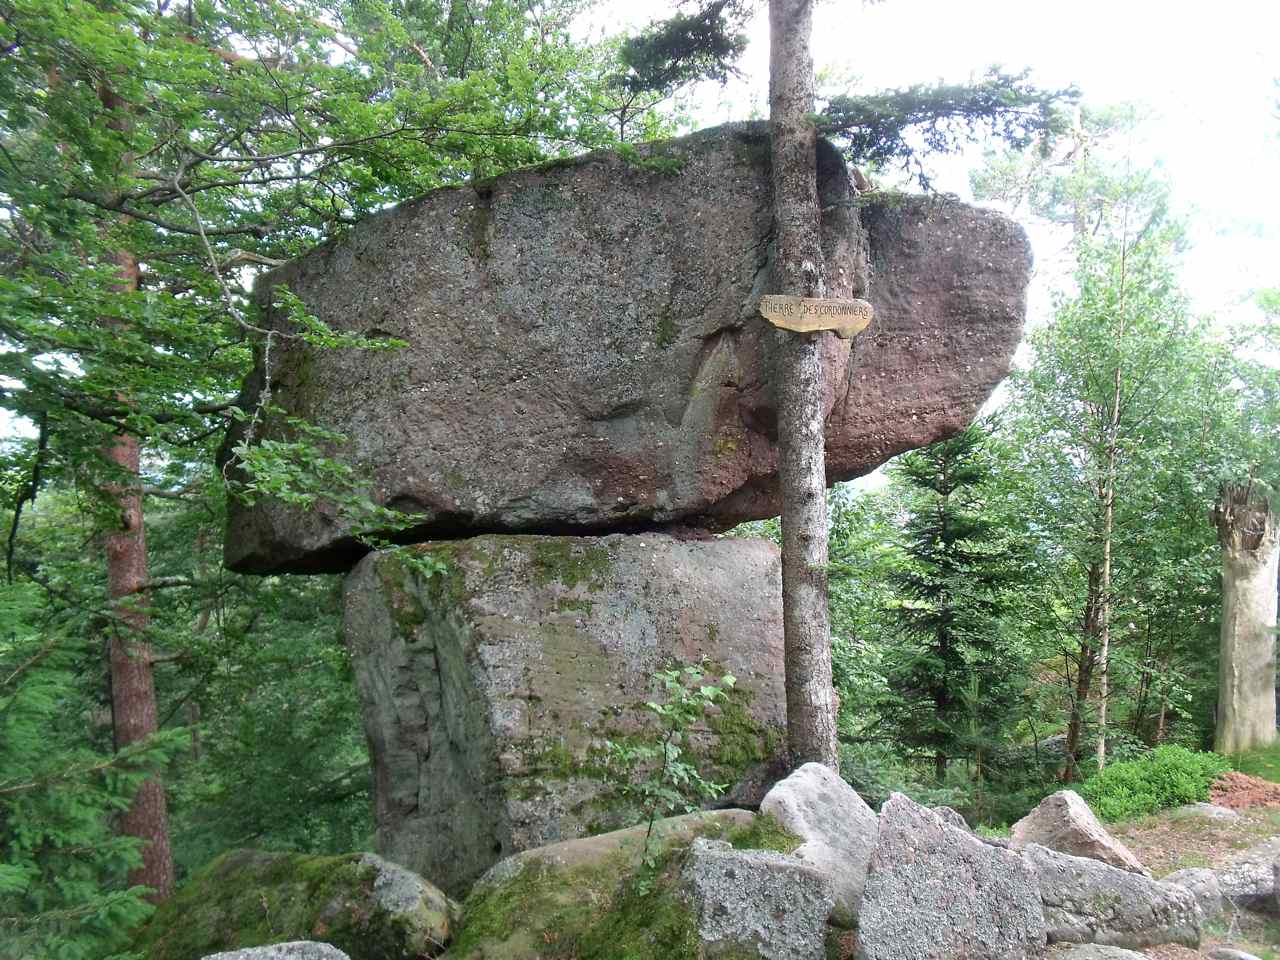 La pierre des cordonniers (Massif du Taennchel)